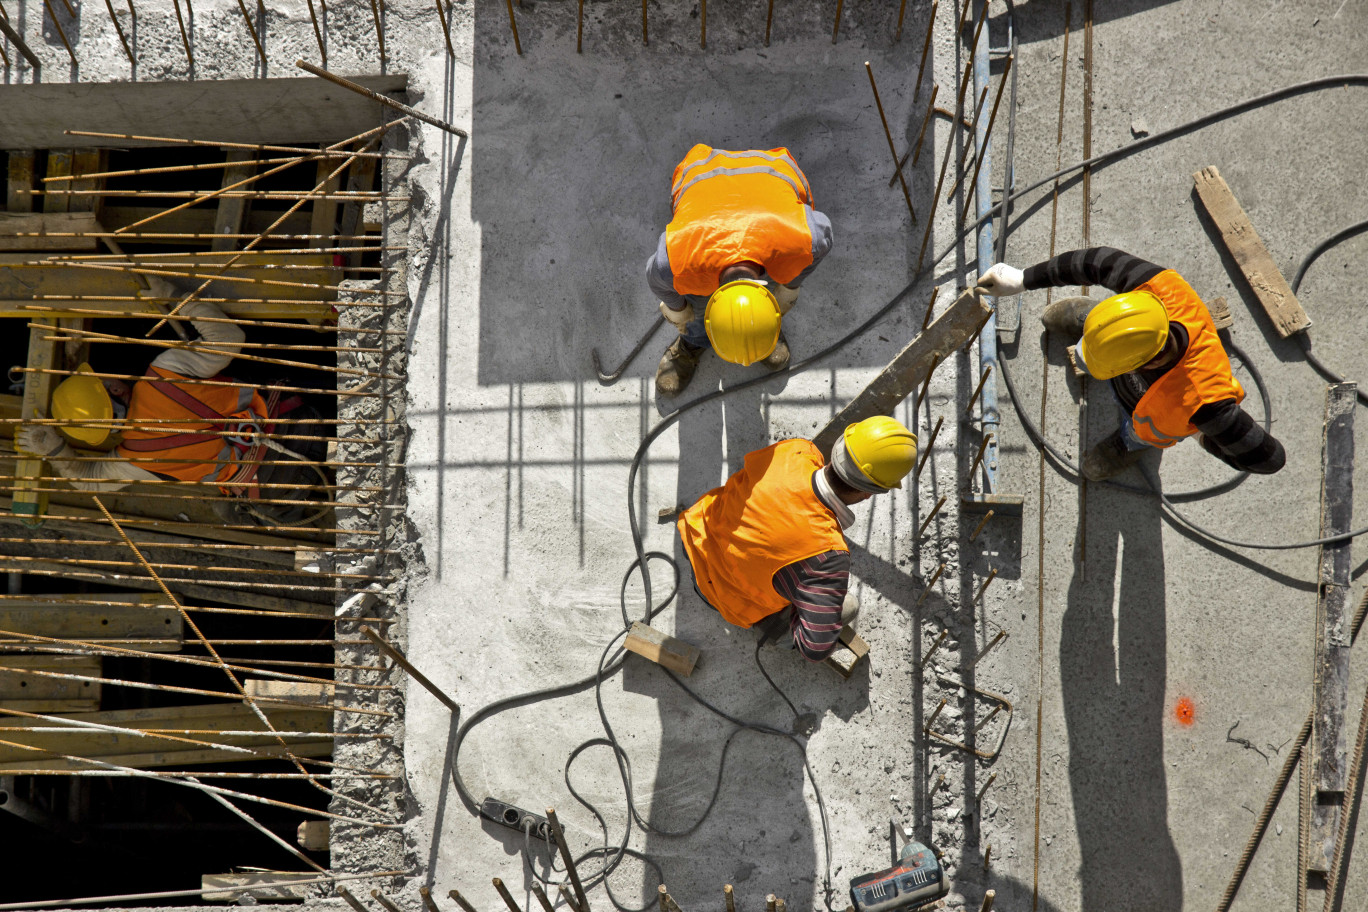 La construction est l'un des seuls secteurs à ne pas être touché par la crise, explique l'Urssaf Picardie. Crédit photo AdobeStock